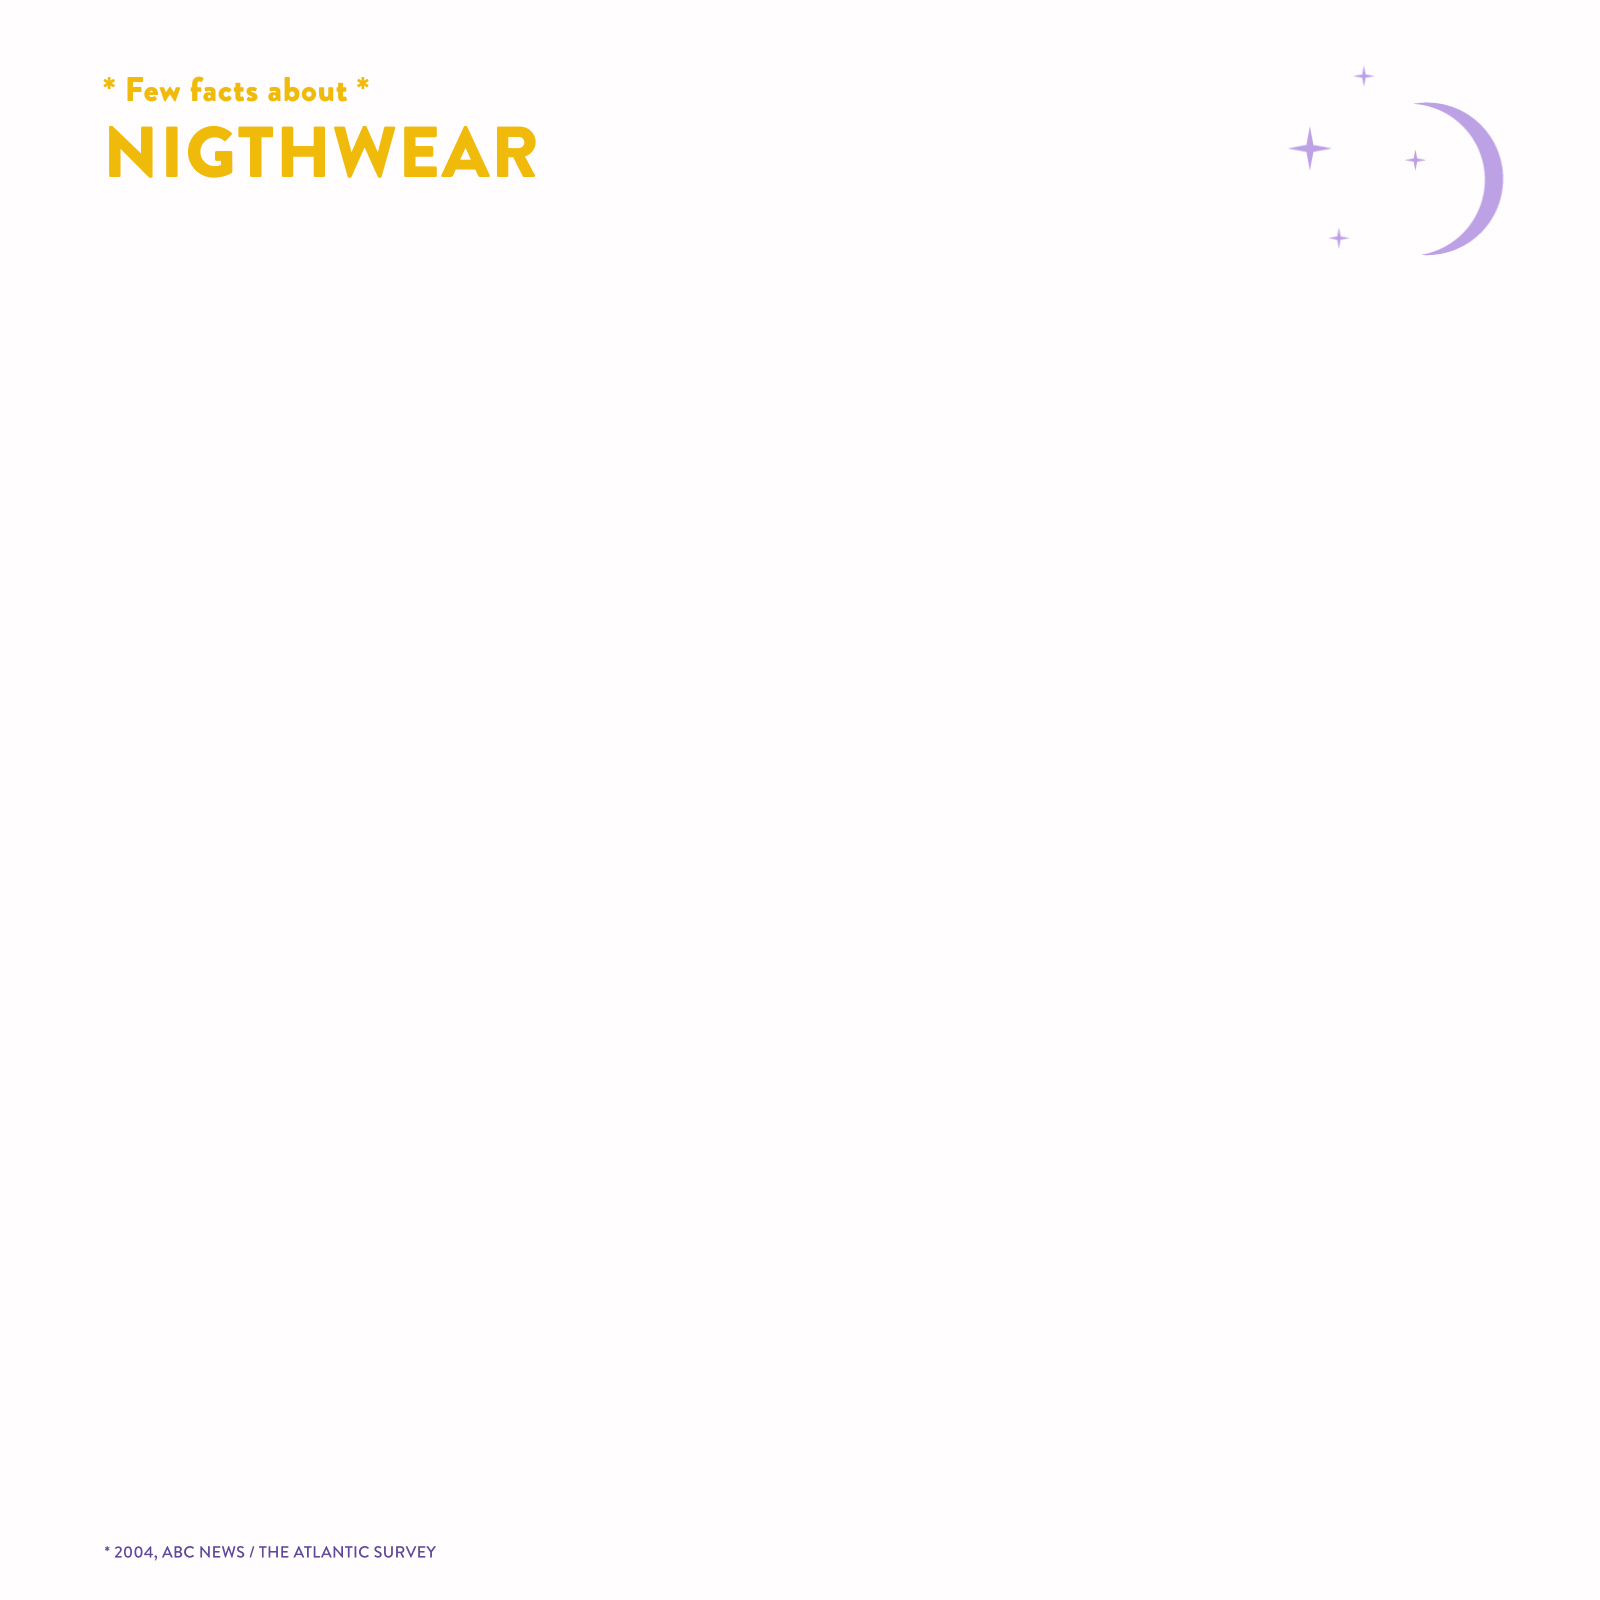 Nightwear